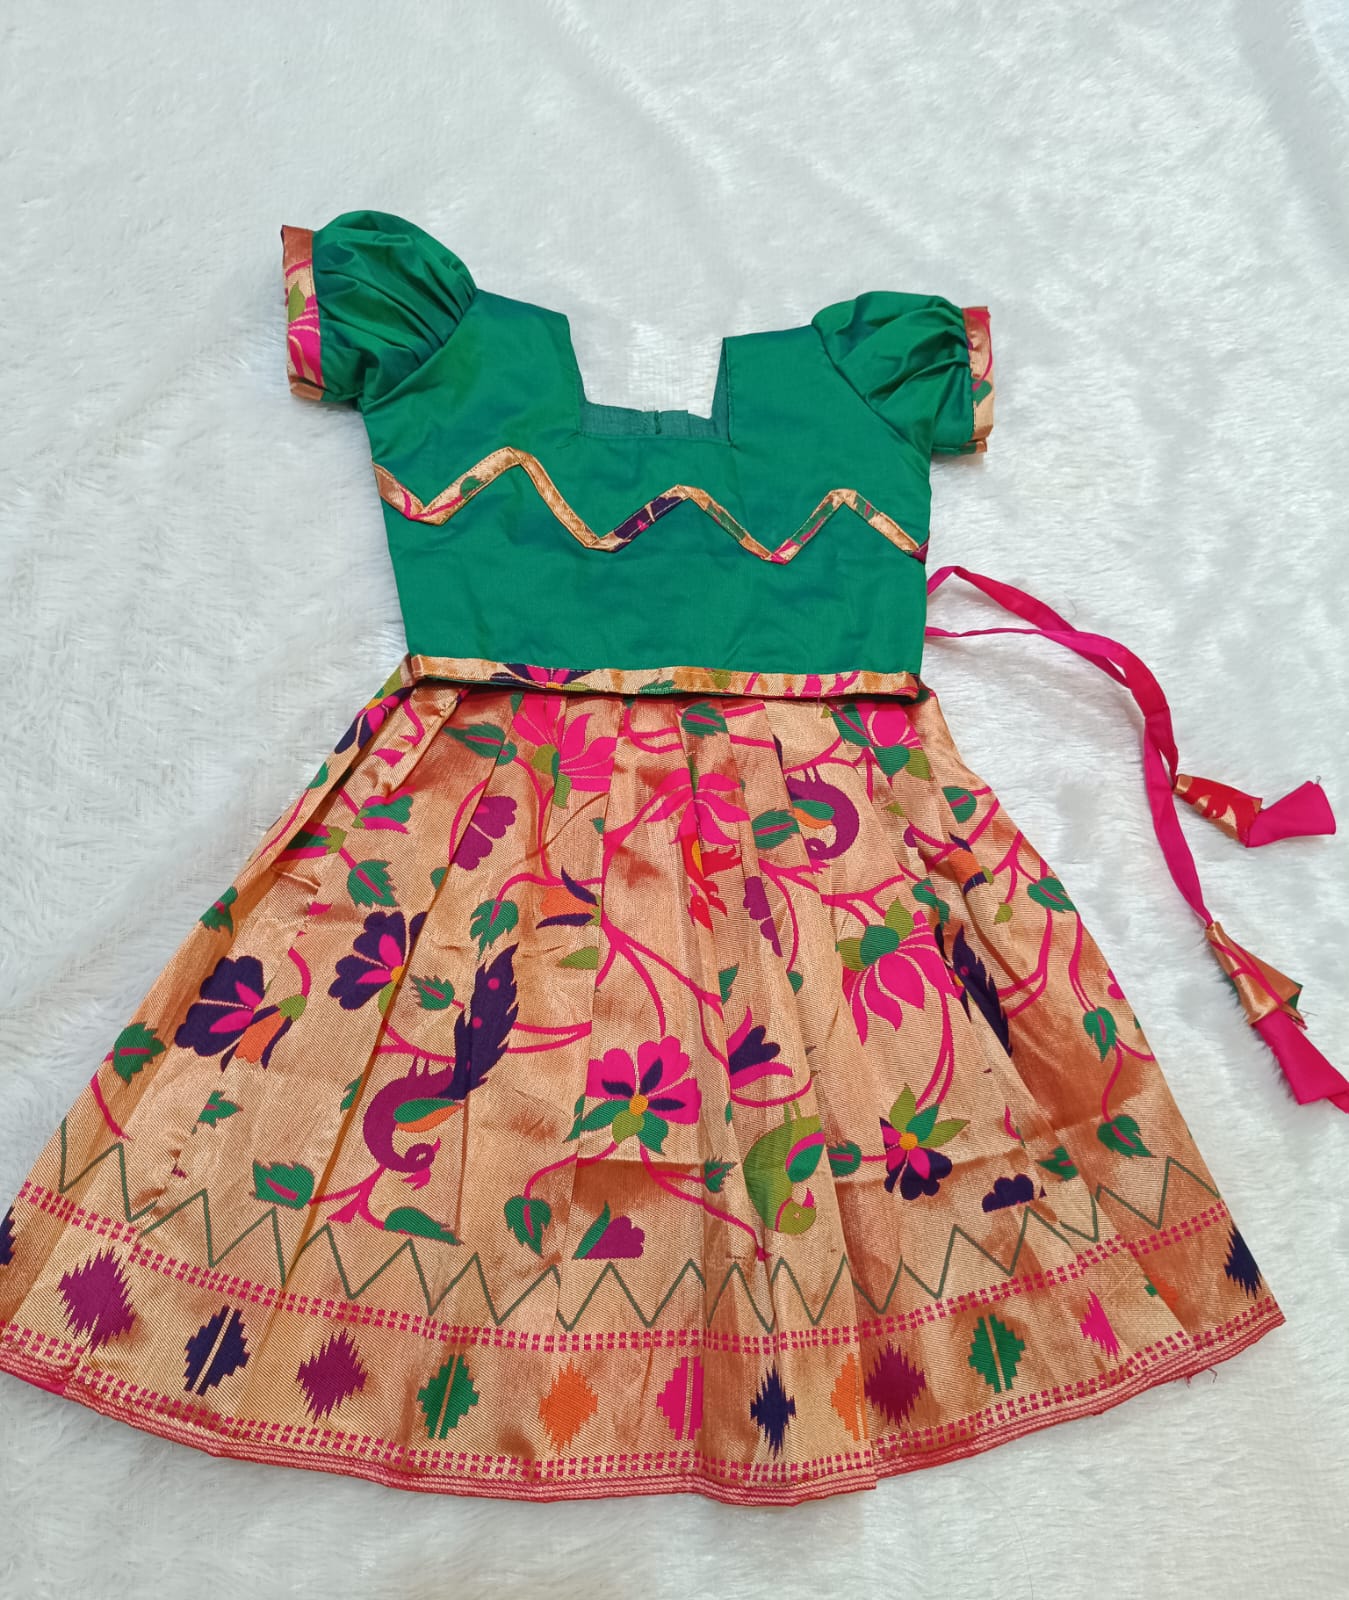 sabyasachi lehenga for little (small, toddler) girls | eBay